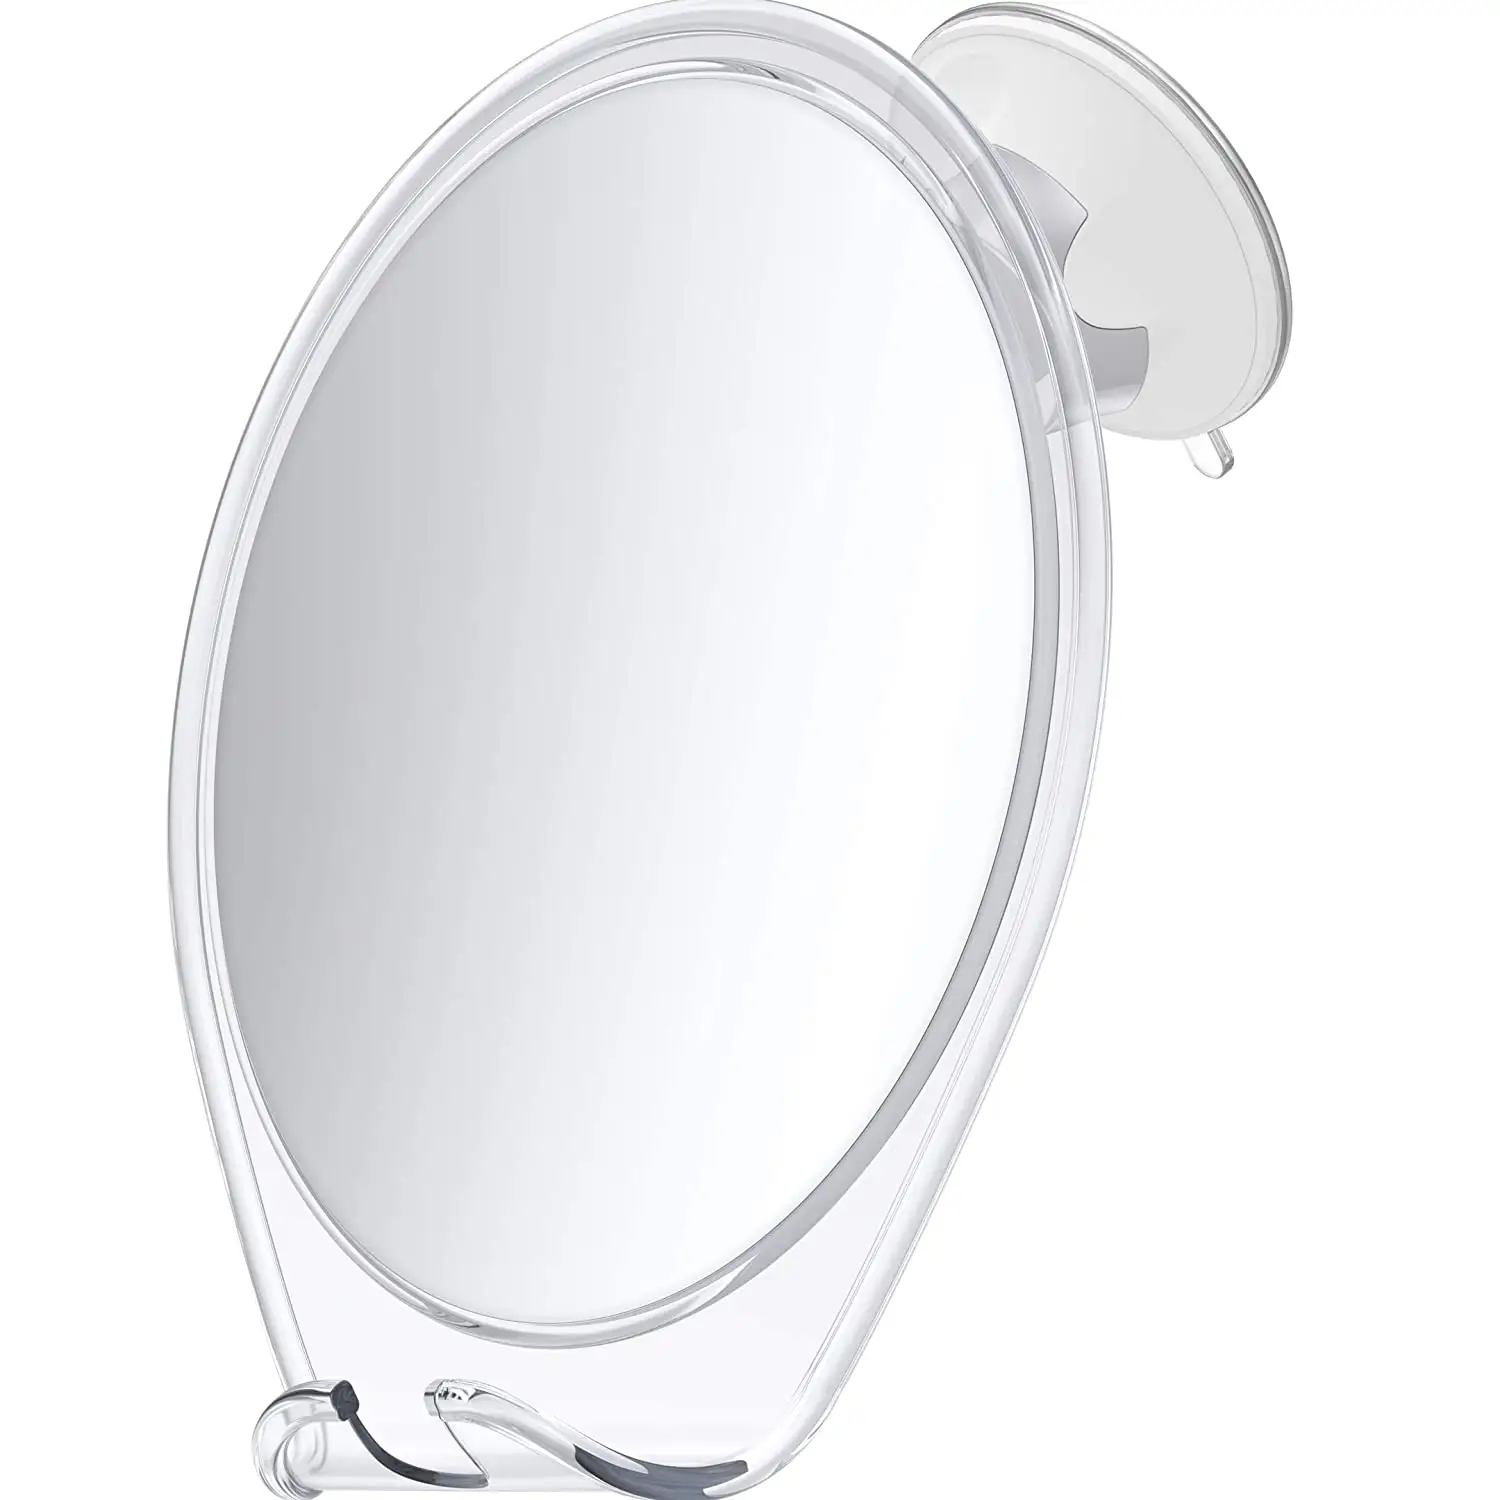 مرآة استحمام مضادة للضباب, مرآة استحمام مغطاة للضباب للحلاقة بدون ضباب مع شفط وحامل شفرة ومرايا حلاقة دوارة